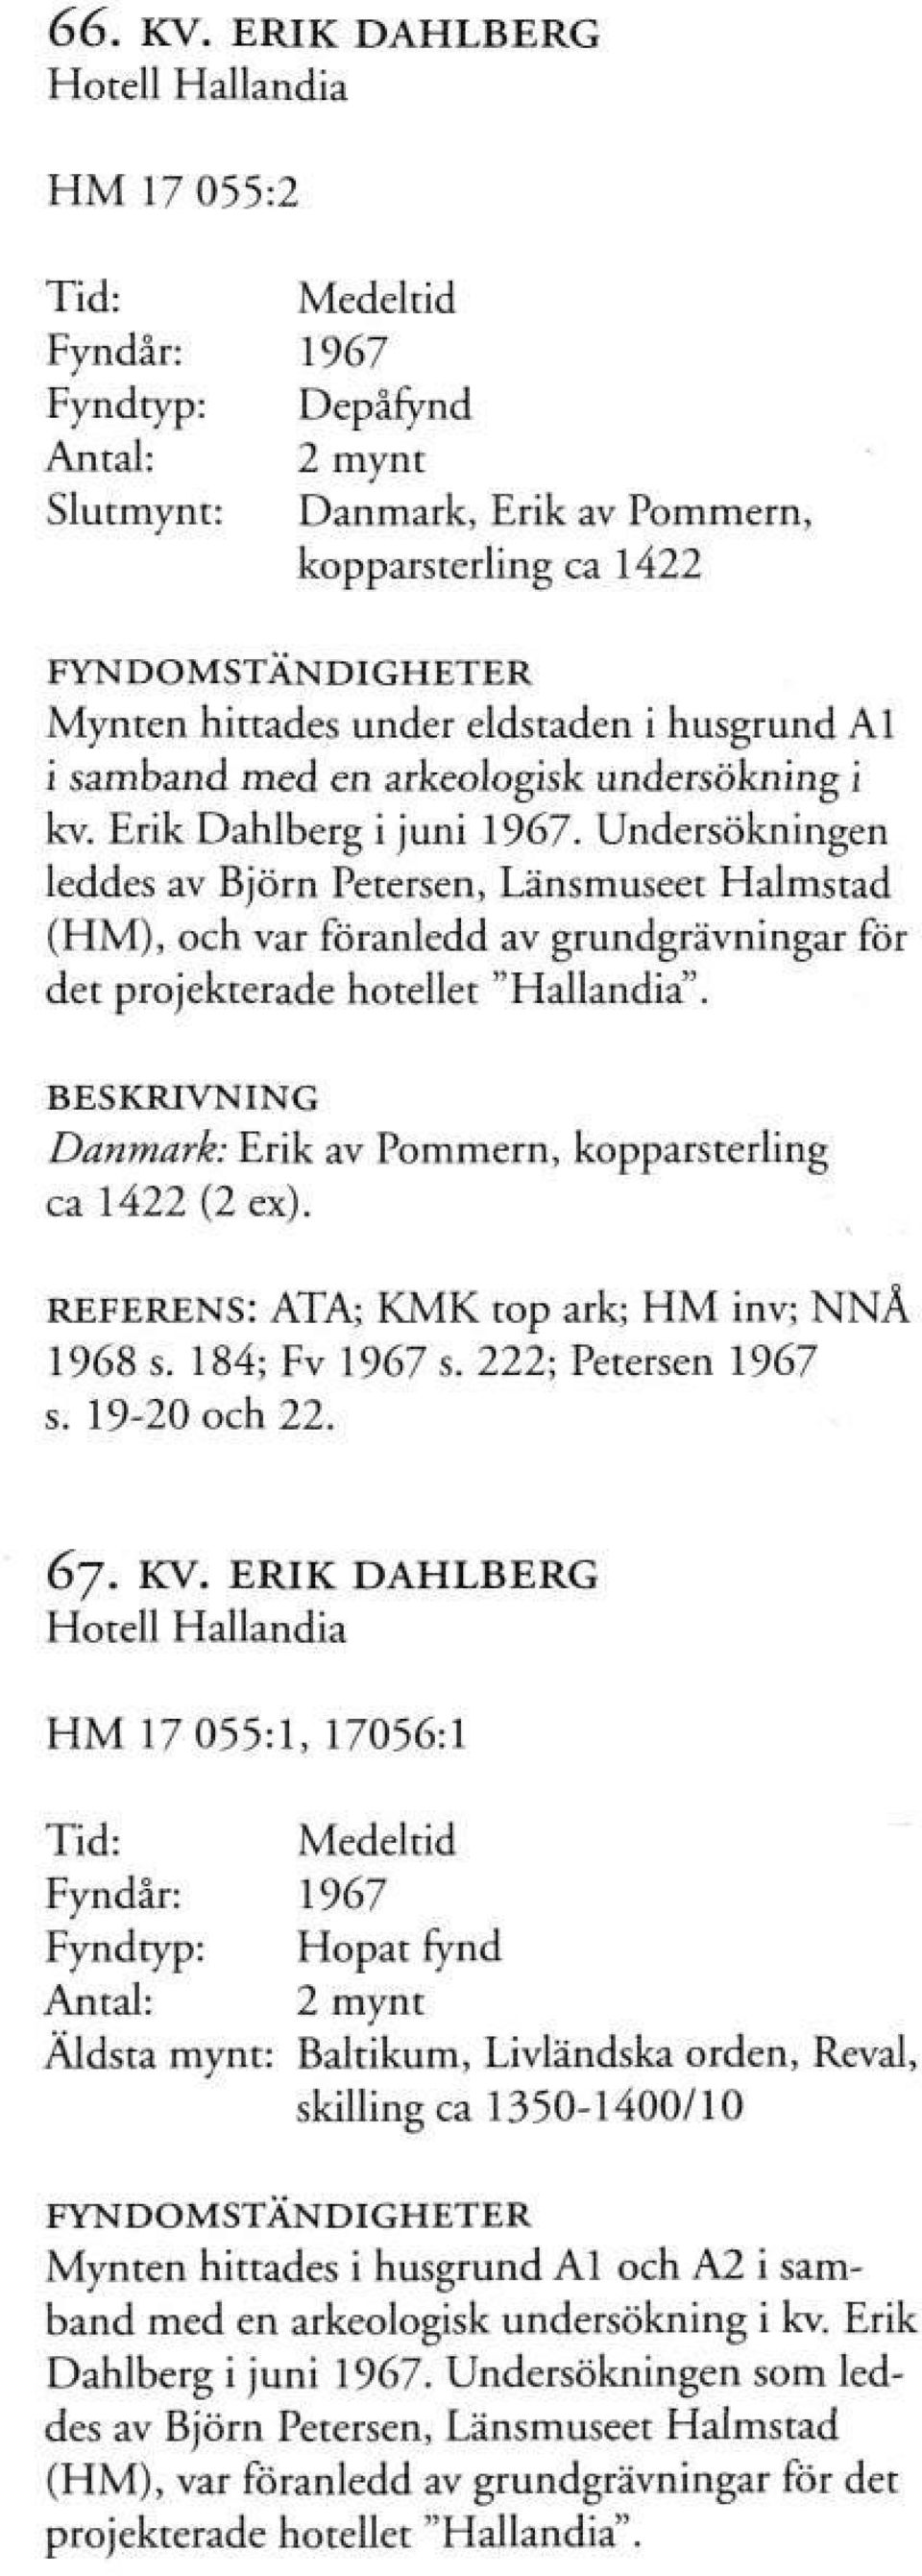 Al i samband med en arkeologisk undersökning i kv. Erik Dahlberg i juni 1967.